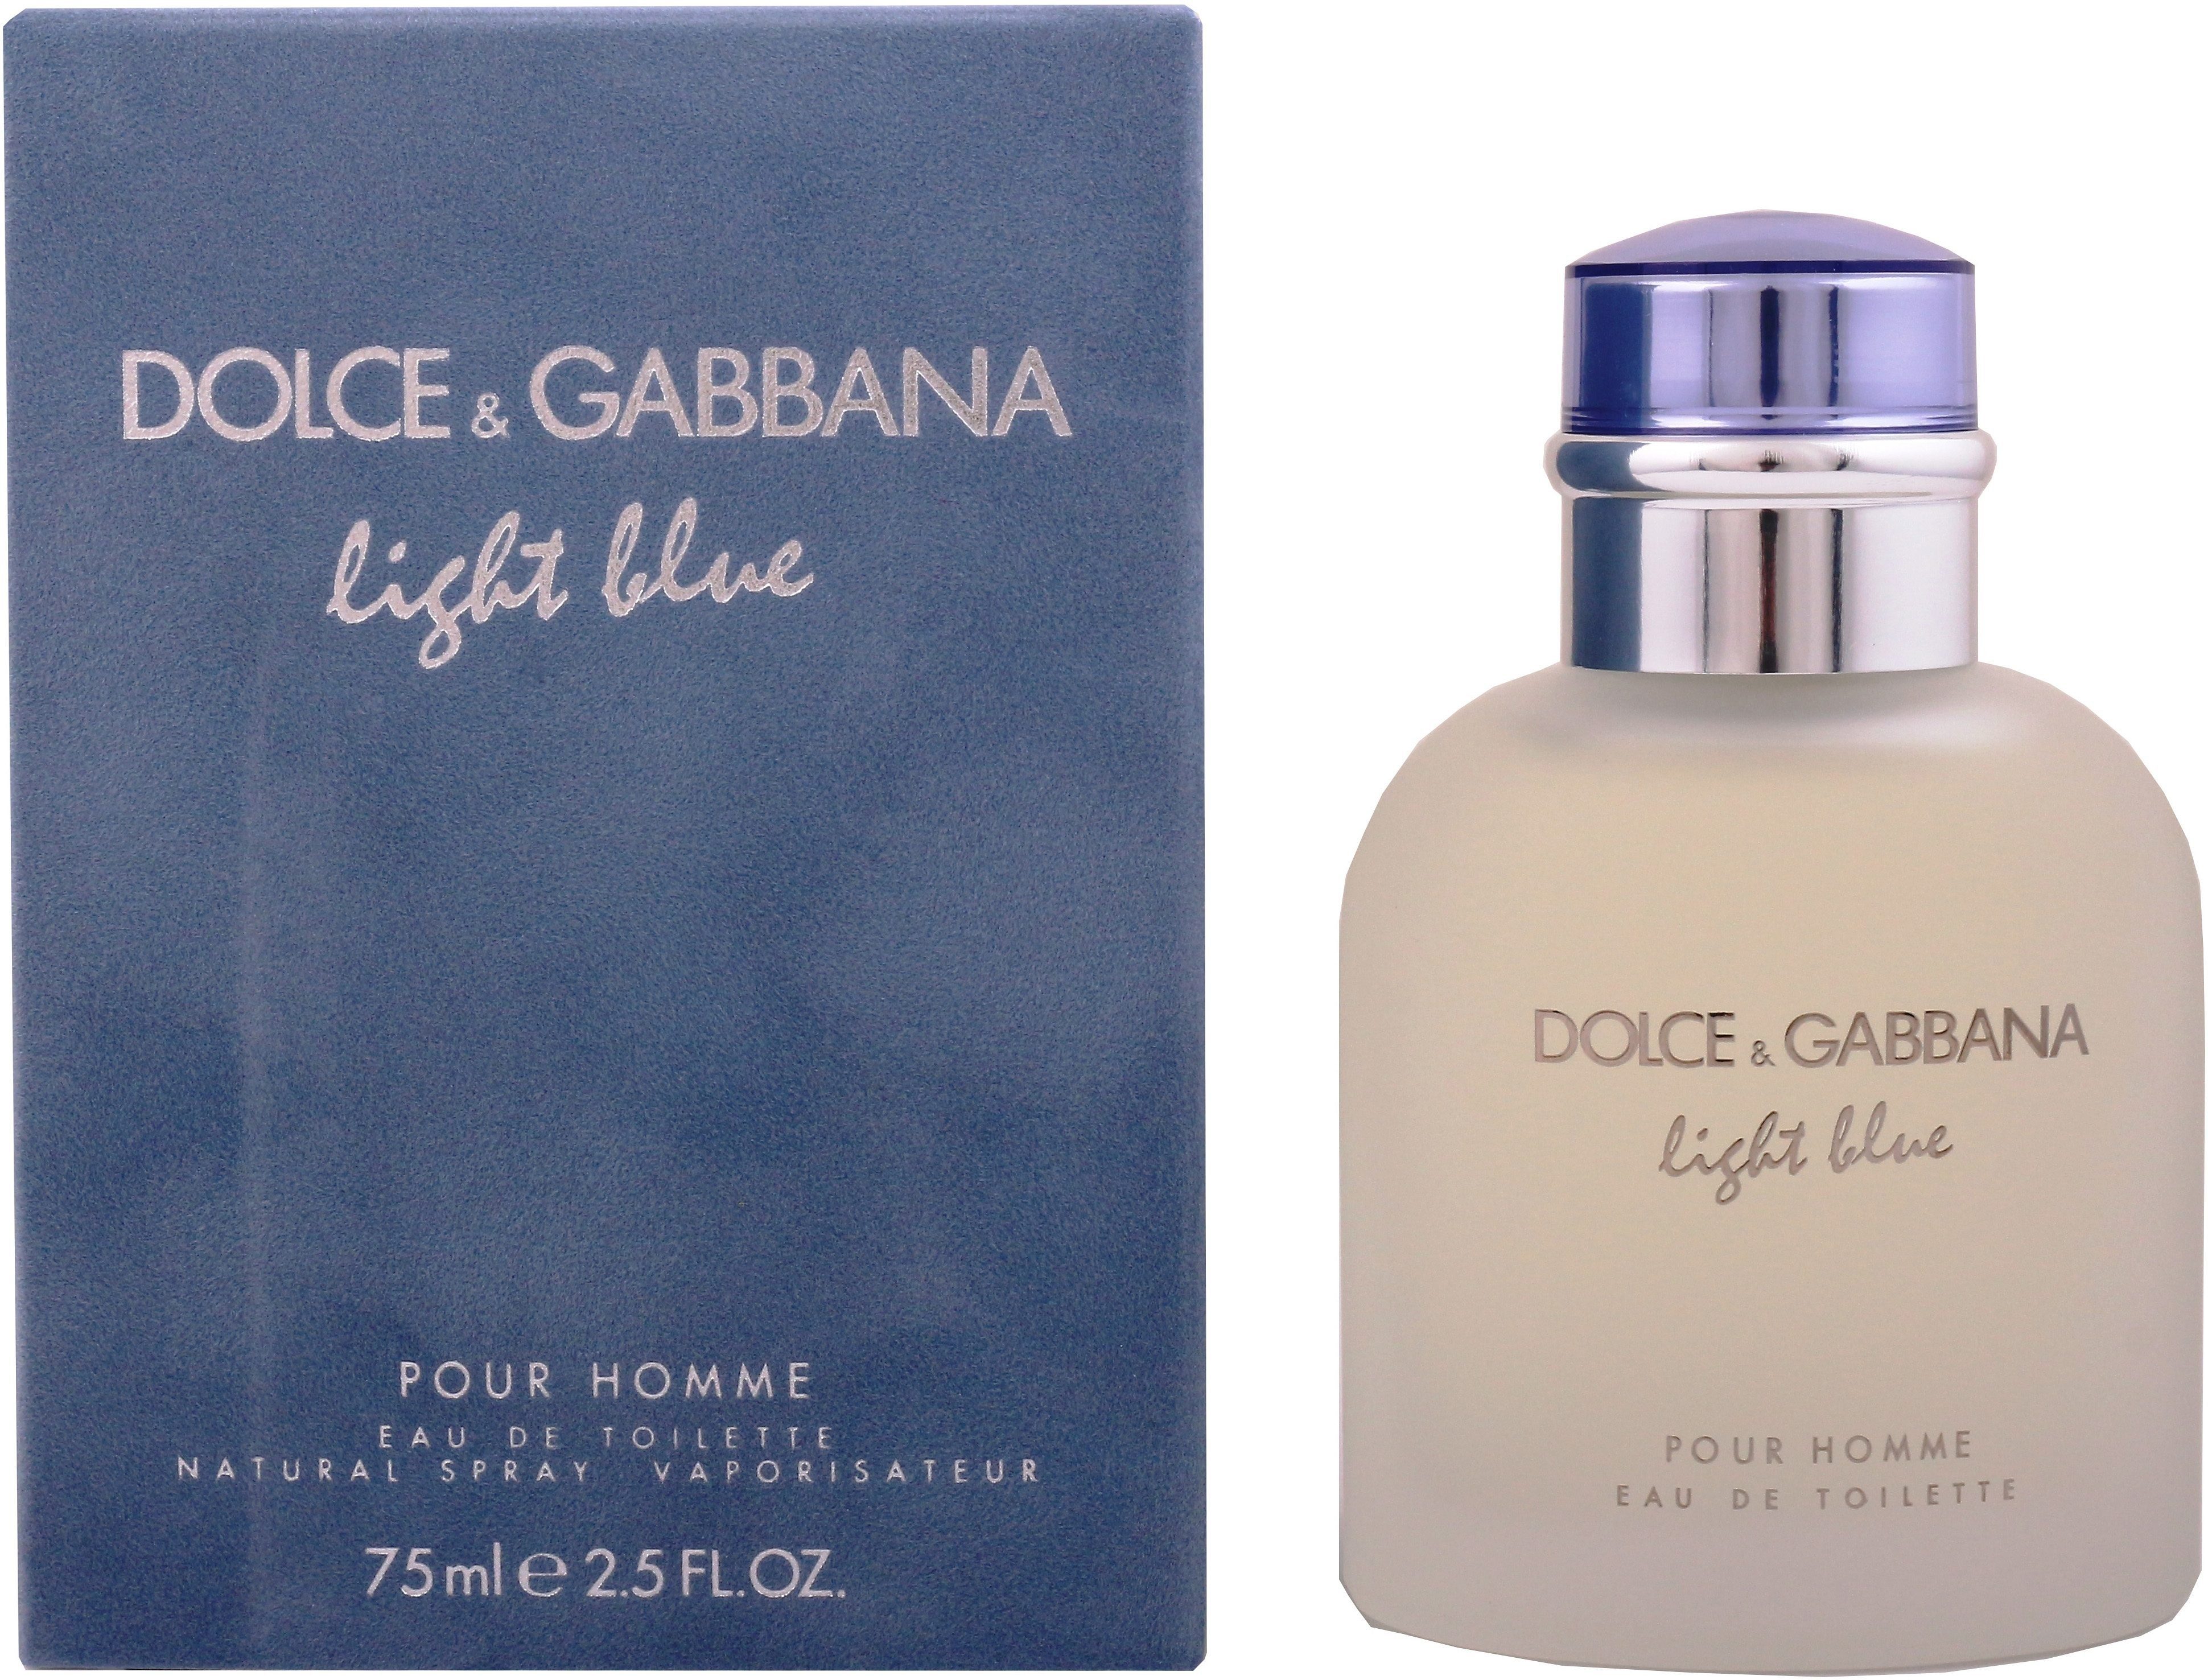 GABBANA him DOLCE Pour & de Light Männer, Blue Parfum, Eau Toilette EdT for Homme, für